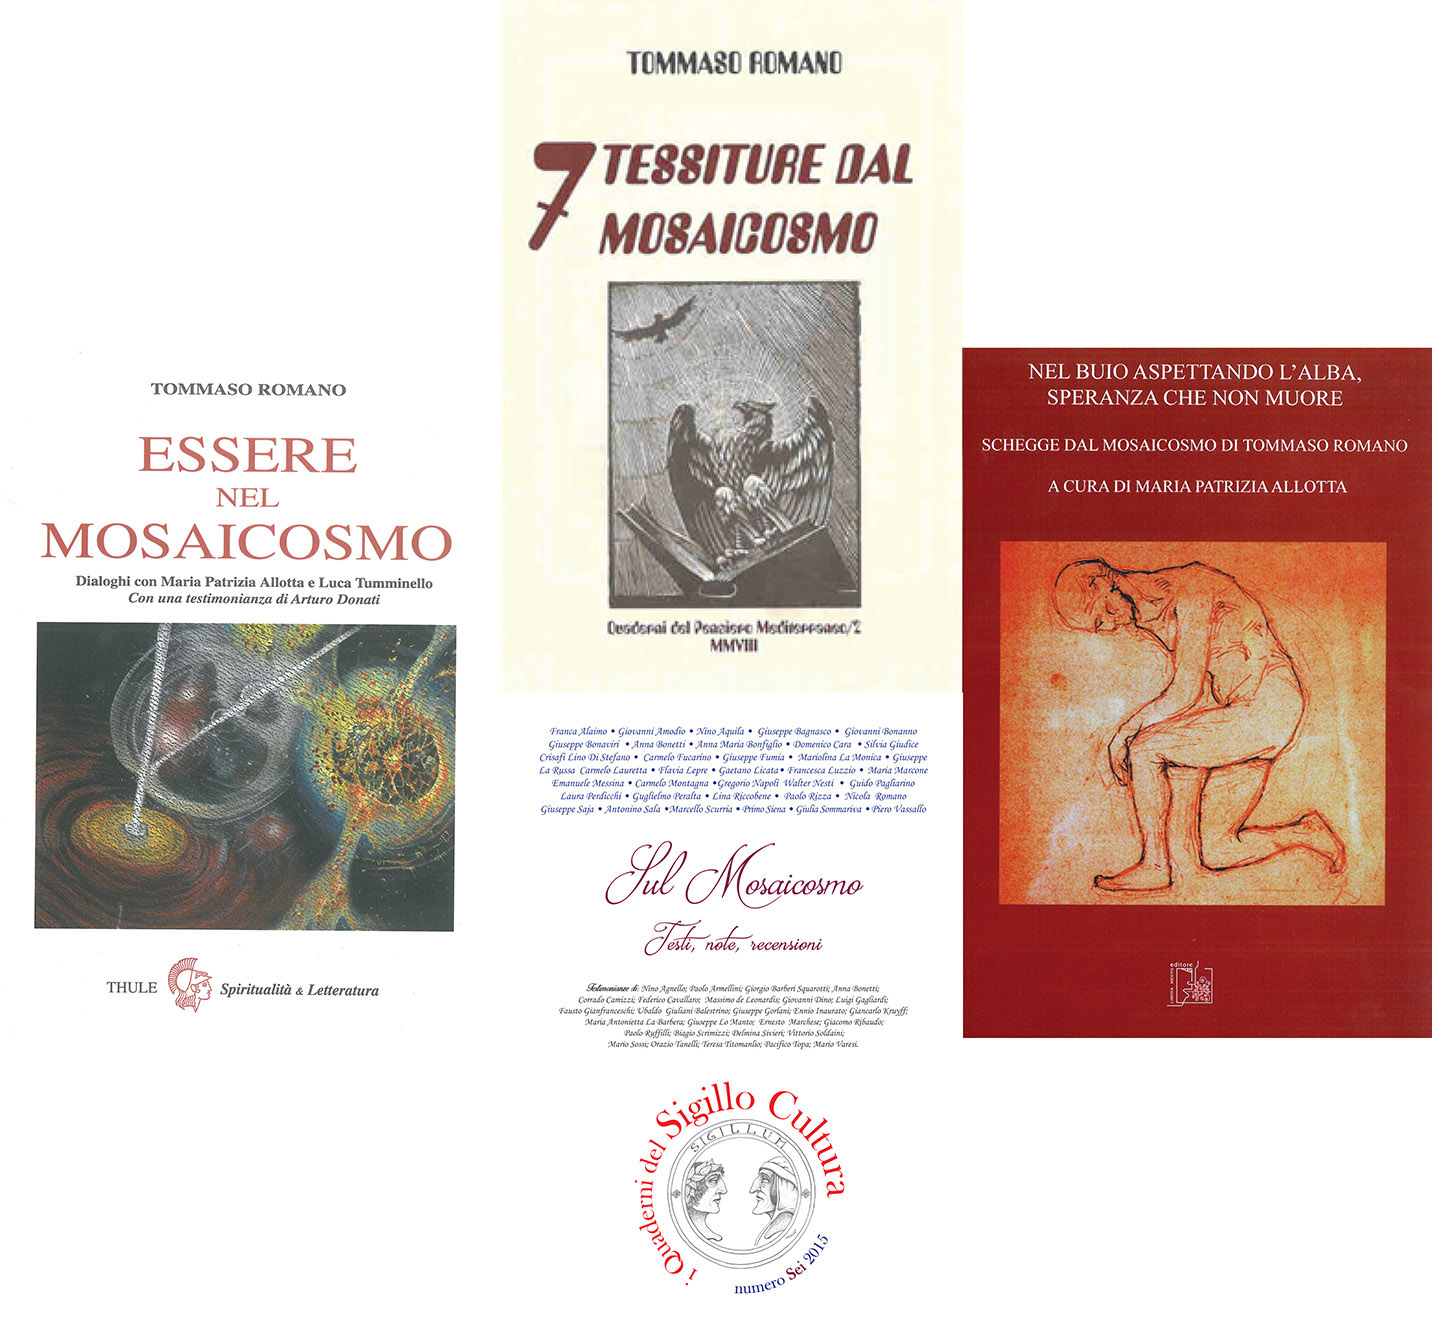 Mosaicosmo/3 - “L'universo intellettuale di Tommaso Romano” di Giovanni Bonanno